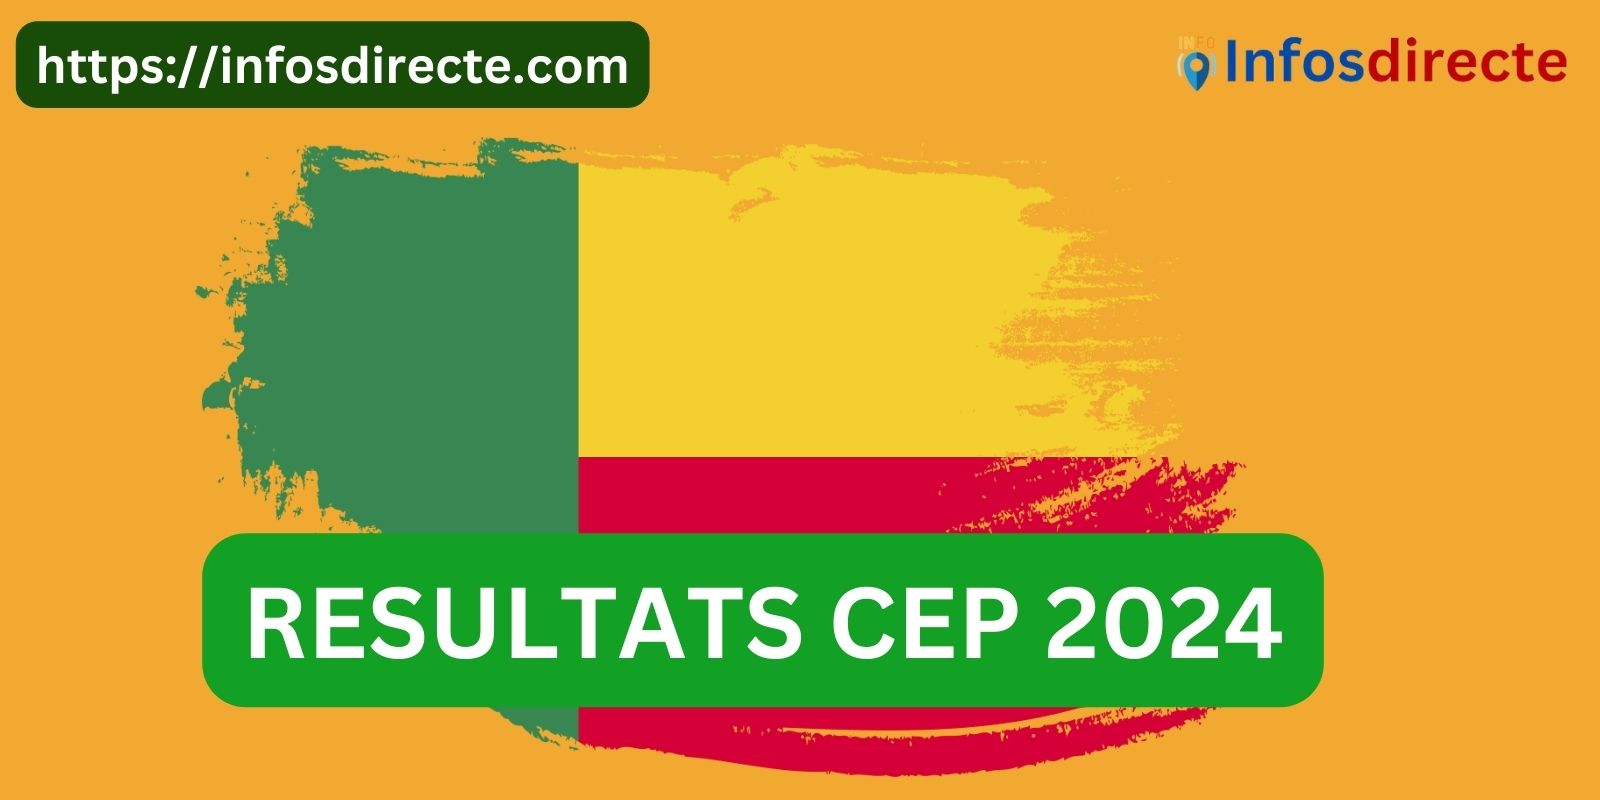 Délibération imminente, résultats du CEP 2024 au Bénin en ligne dès le 28 juin